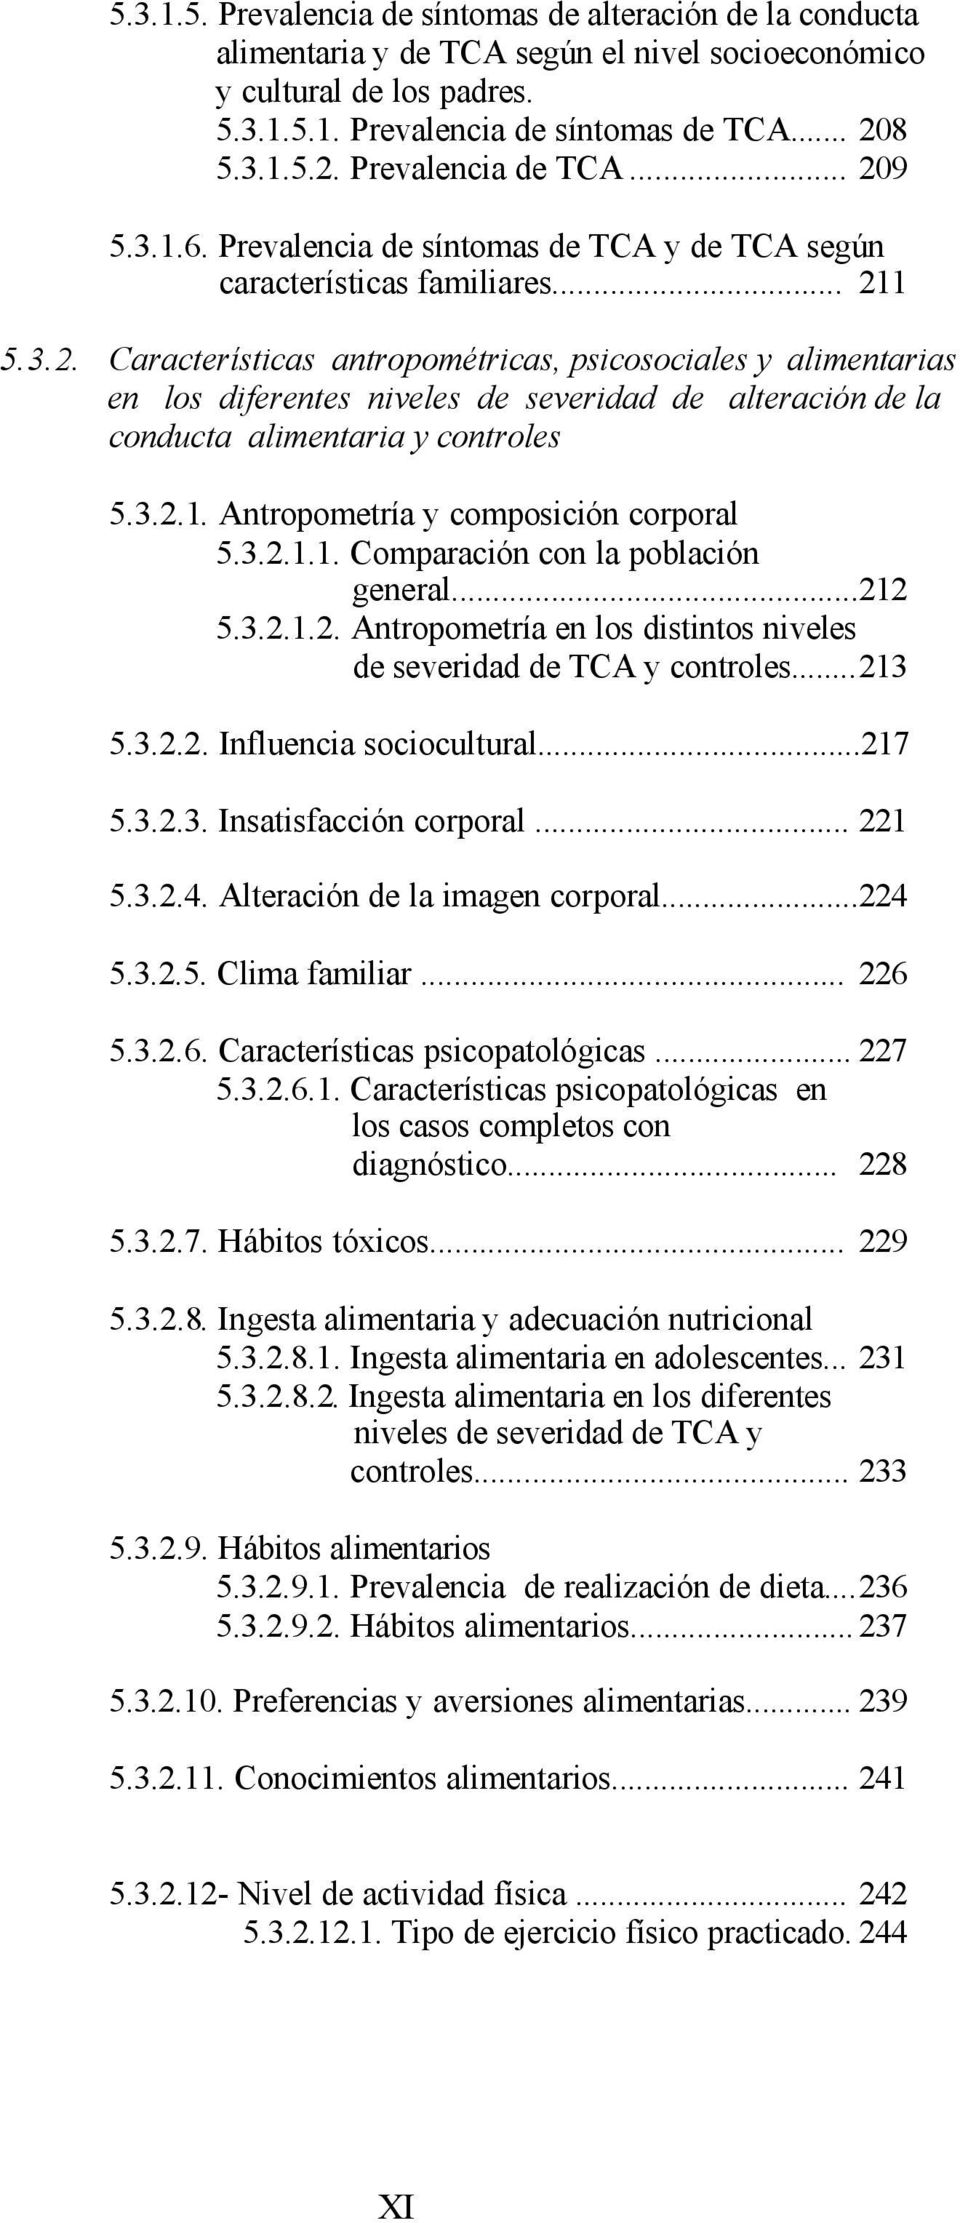 3.2.1. Antropometría y composición corporal 5.3.2.1.1. Comparación con la población general...212 5.3.2.1.2. Antropometría en los distintos niveles de severidad de TCA y controles...213 5.3.2.2. Influencia sociocultural.